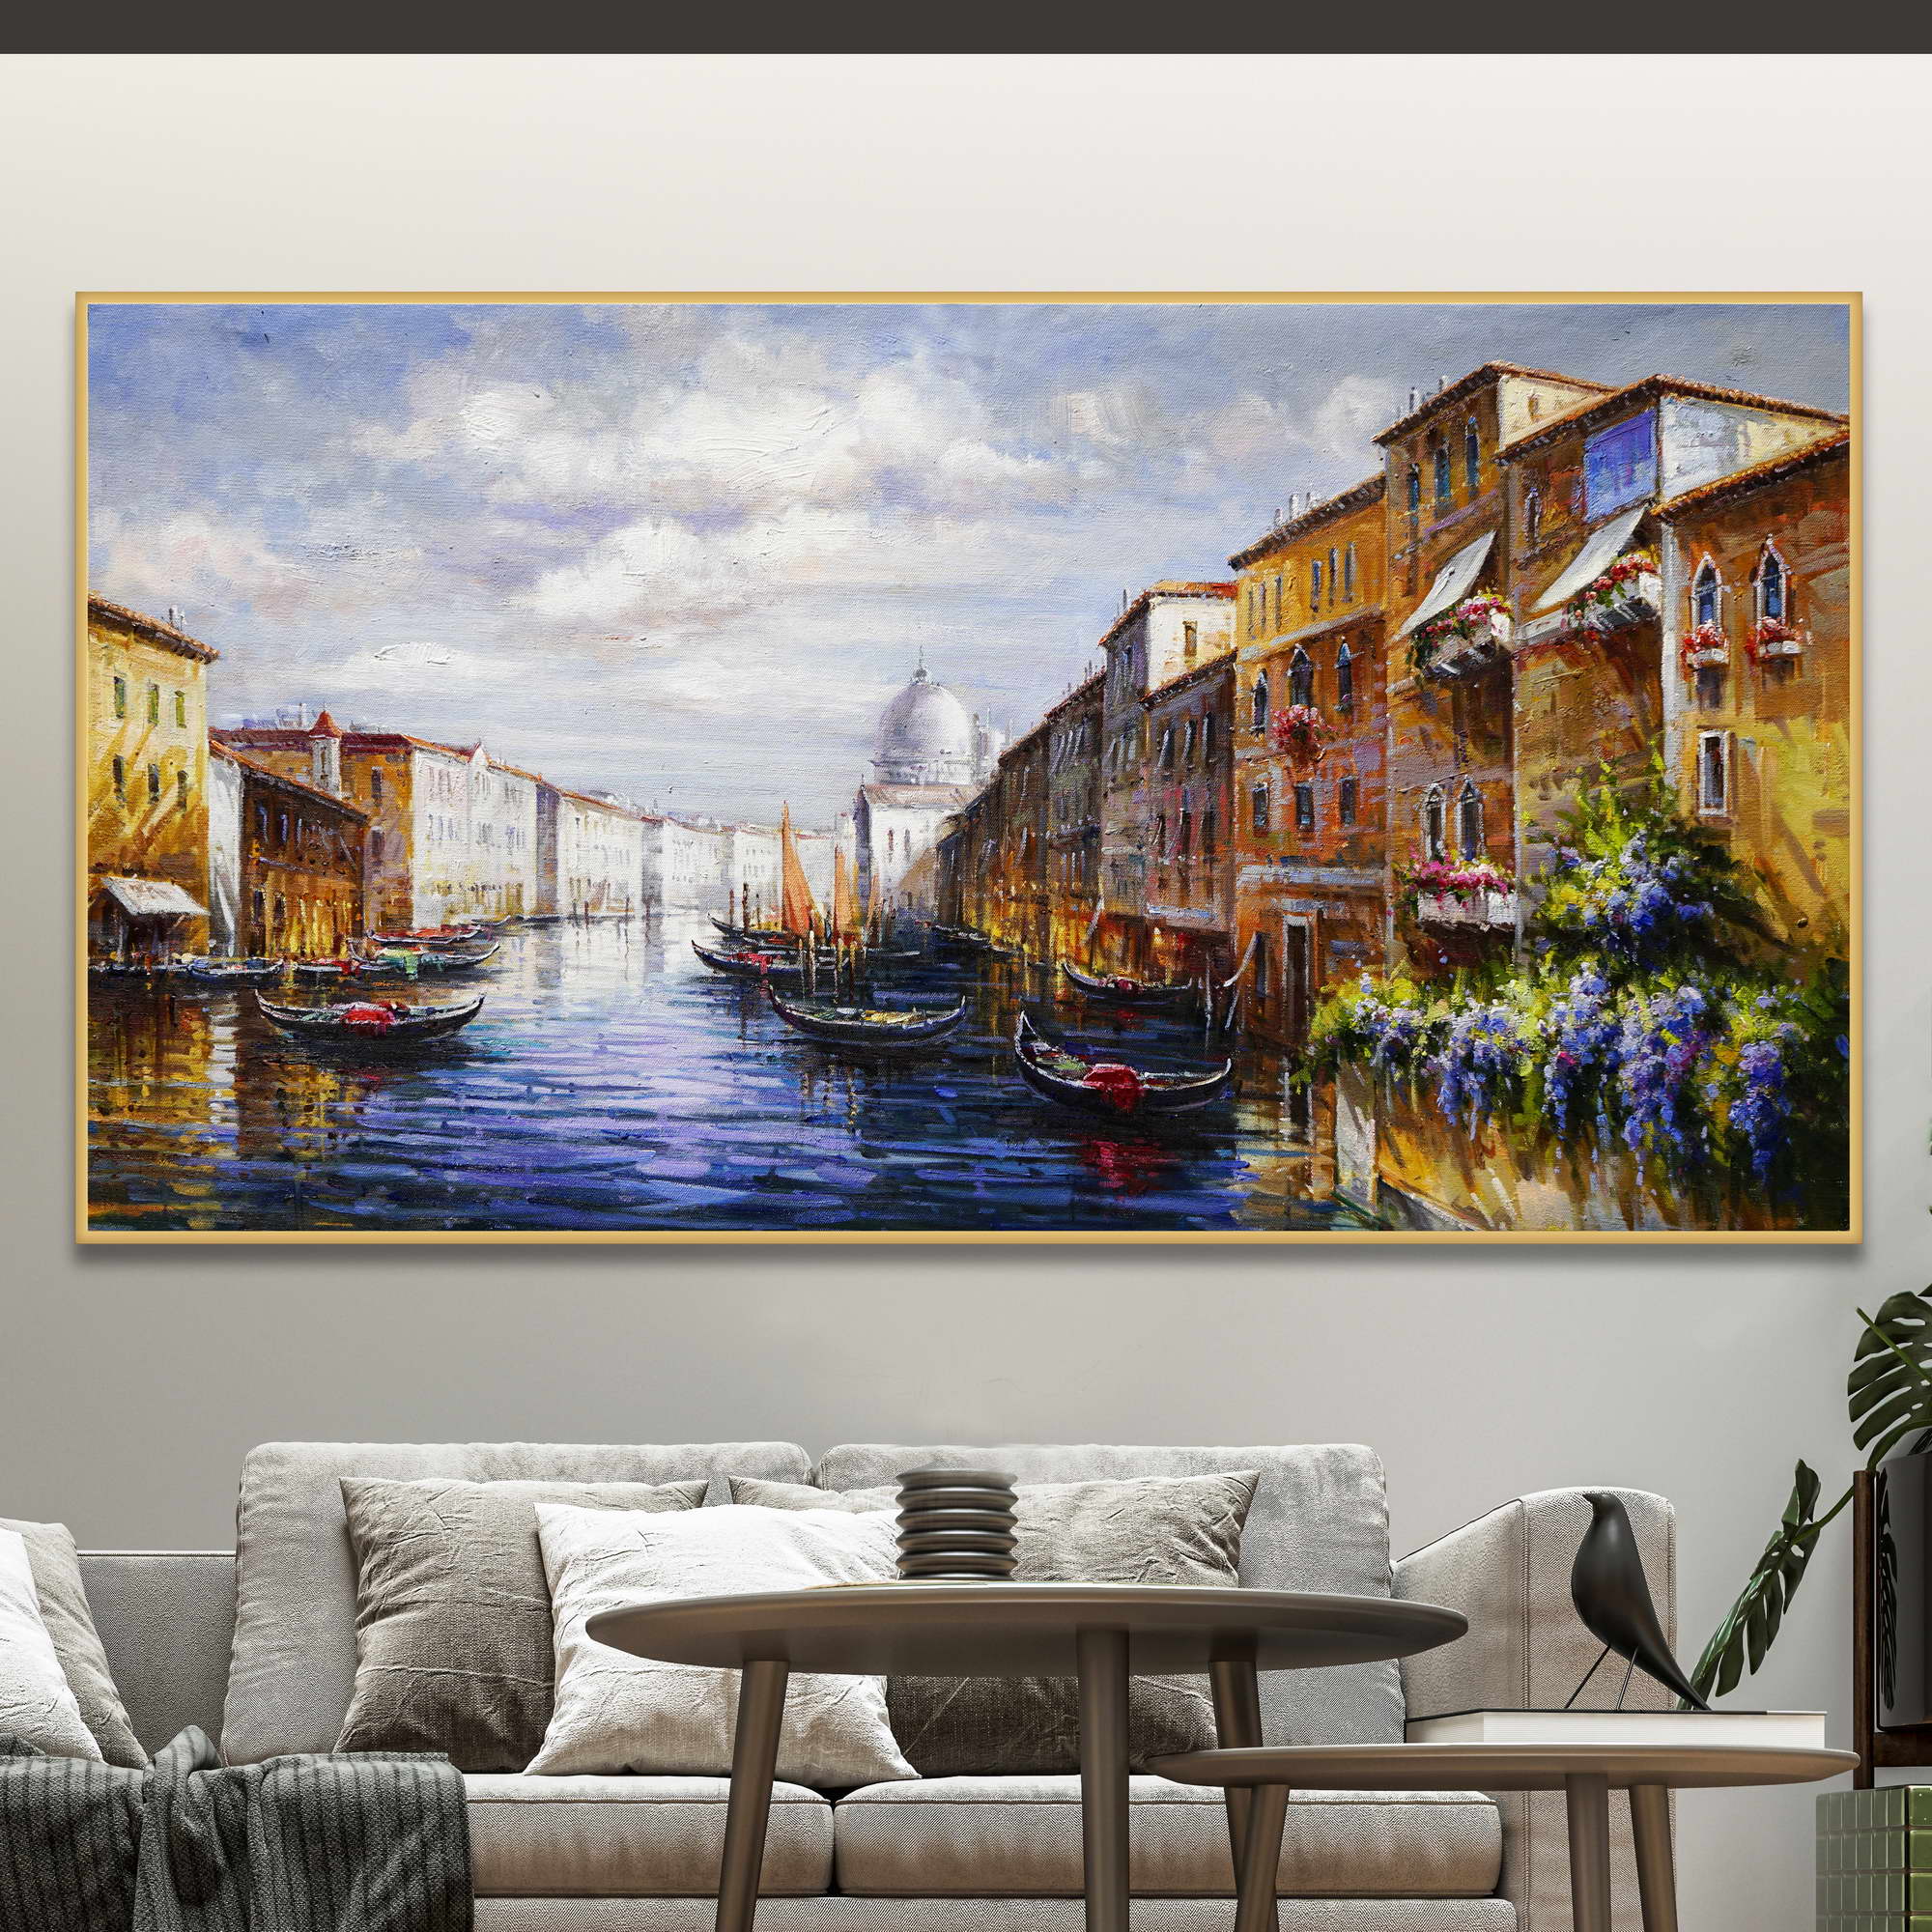 Dipinto del canal Grande a venezia con gondole e edifici storici